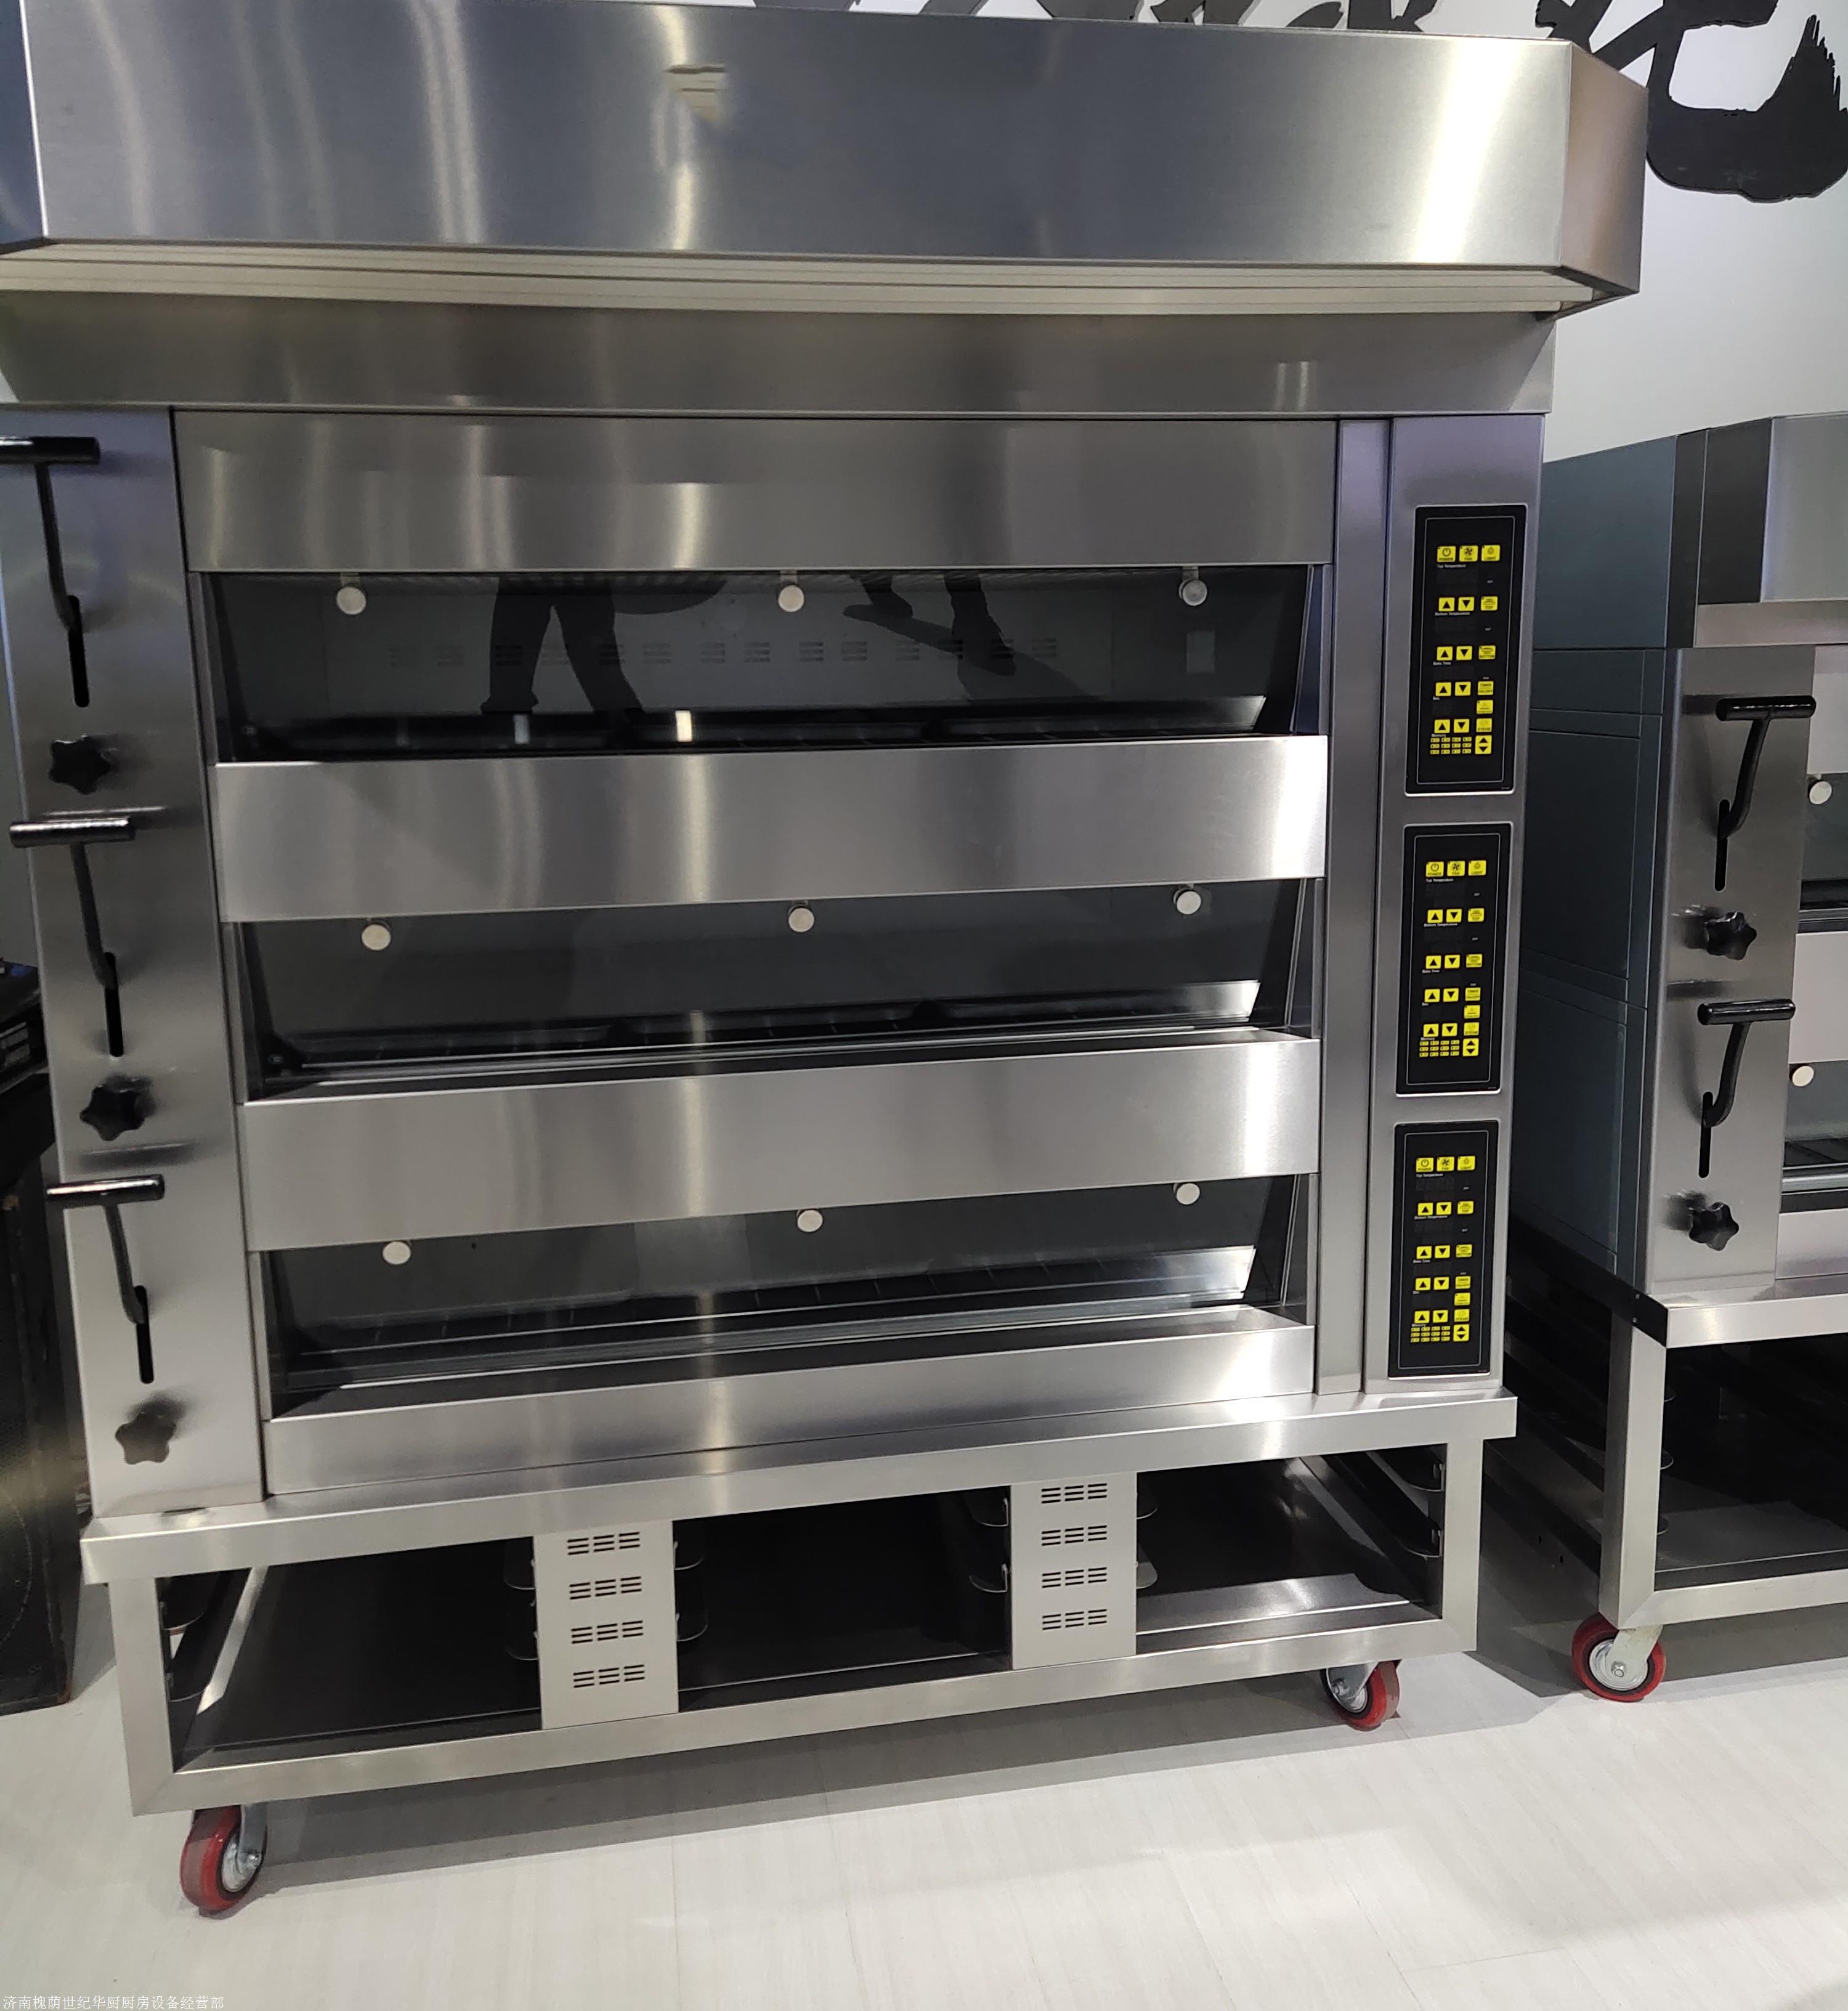 大功率电烤箱 商用大型燃气烤箱 新型节能电烤炉3层6盘 2层4盘